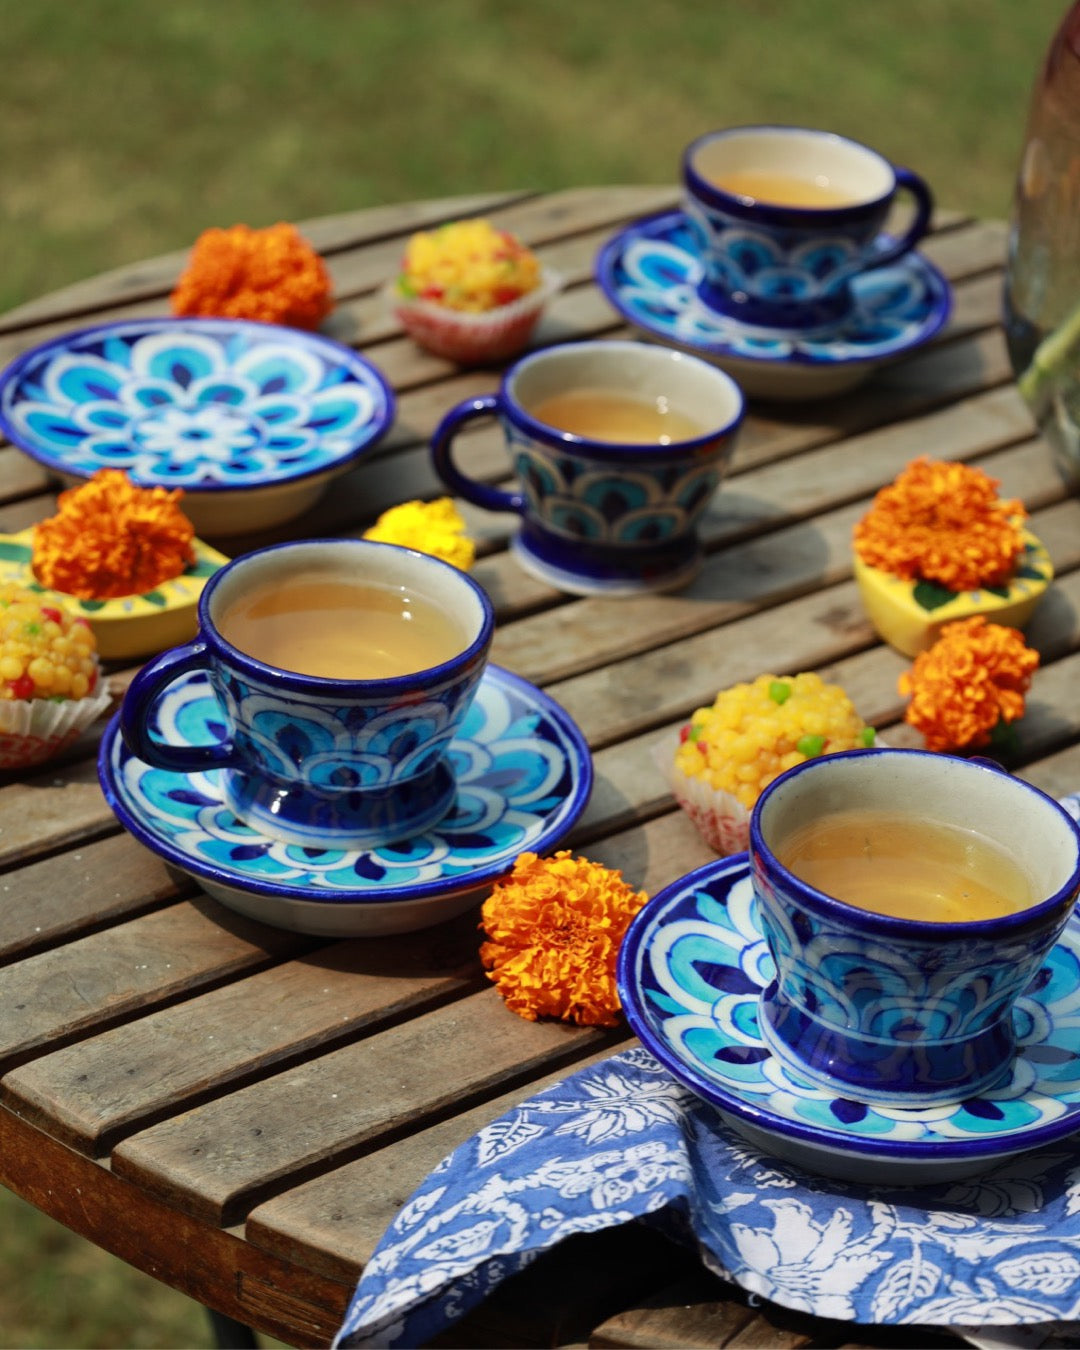 More Pankh Teacup and Saucer Set